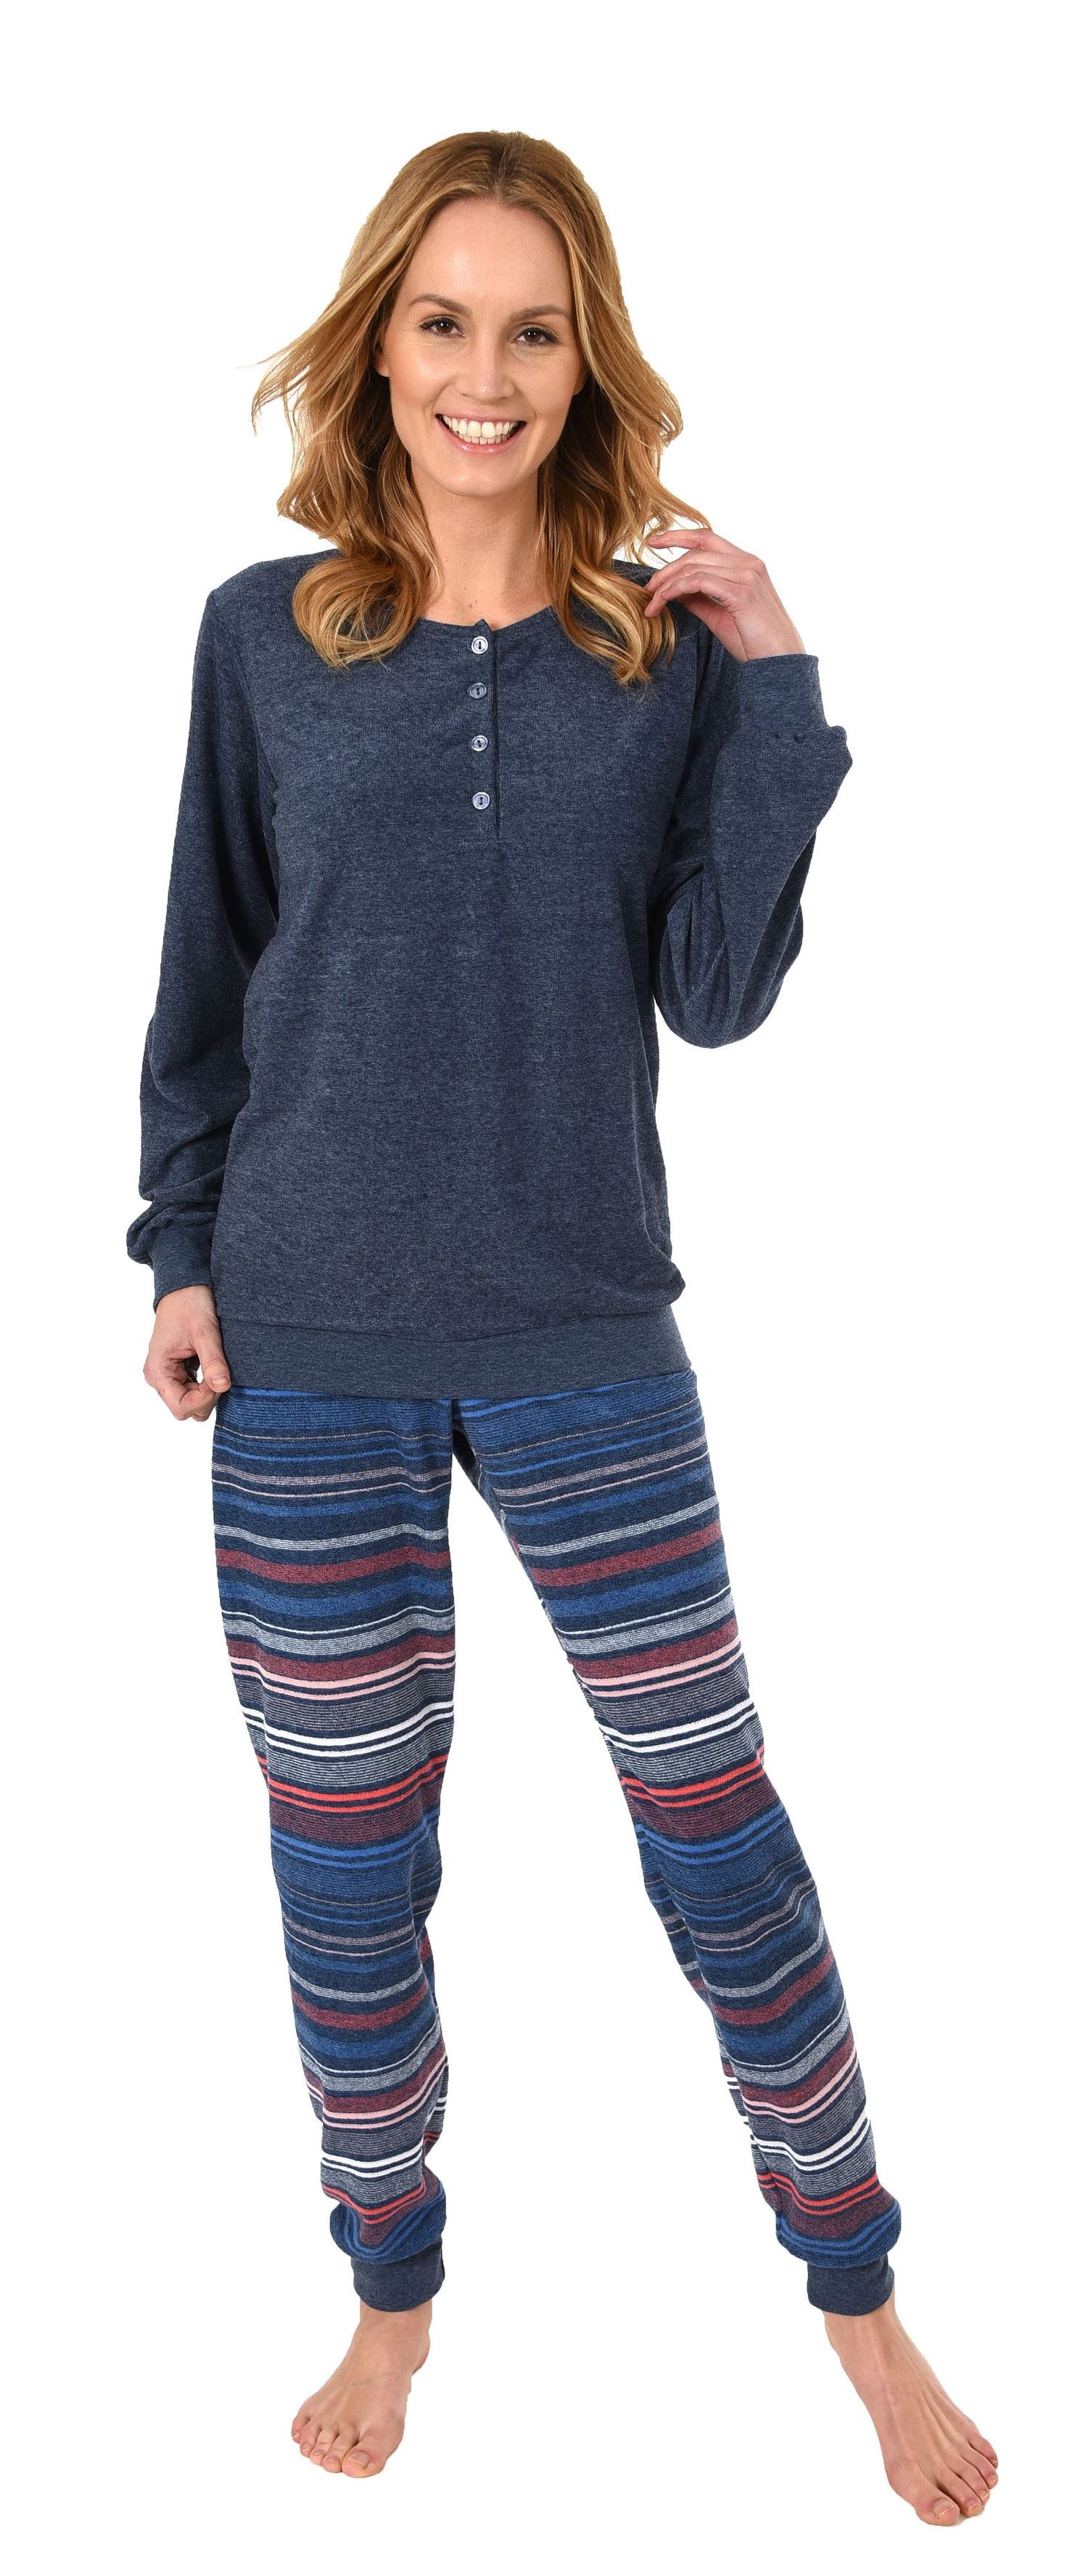 Damen Frottee Pyjama mit Bündchen & Knopfleiste am Hals, auch in Übergrößen bis 60/62! - 281 201 93 236